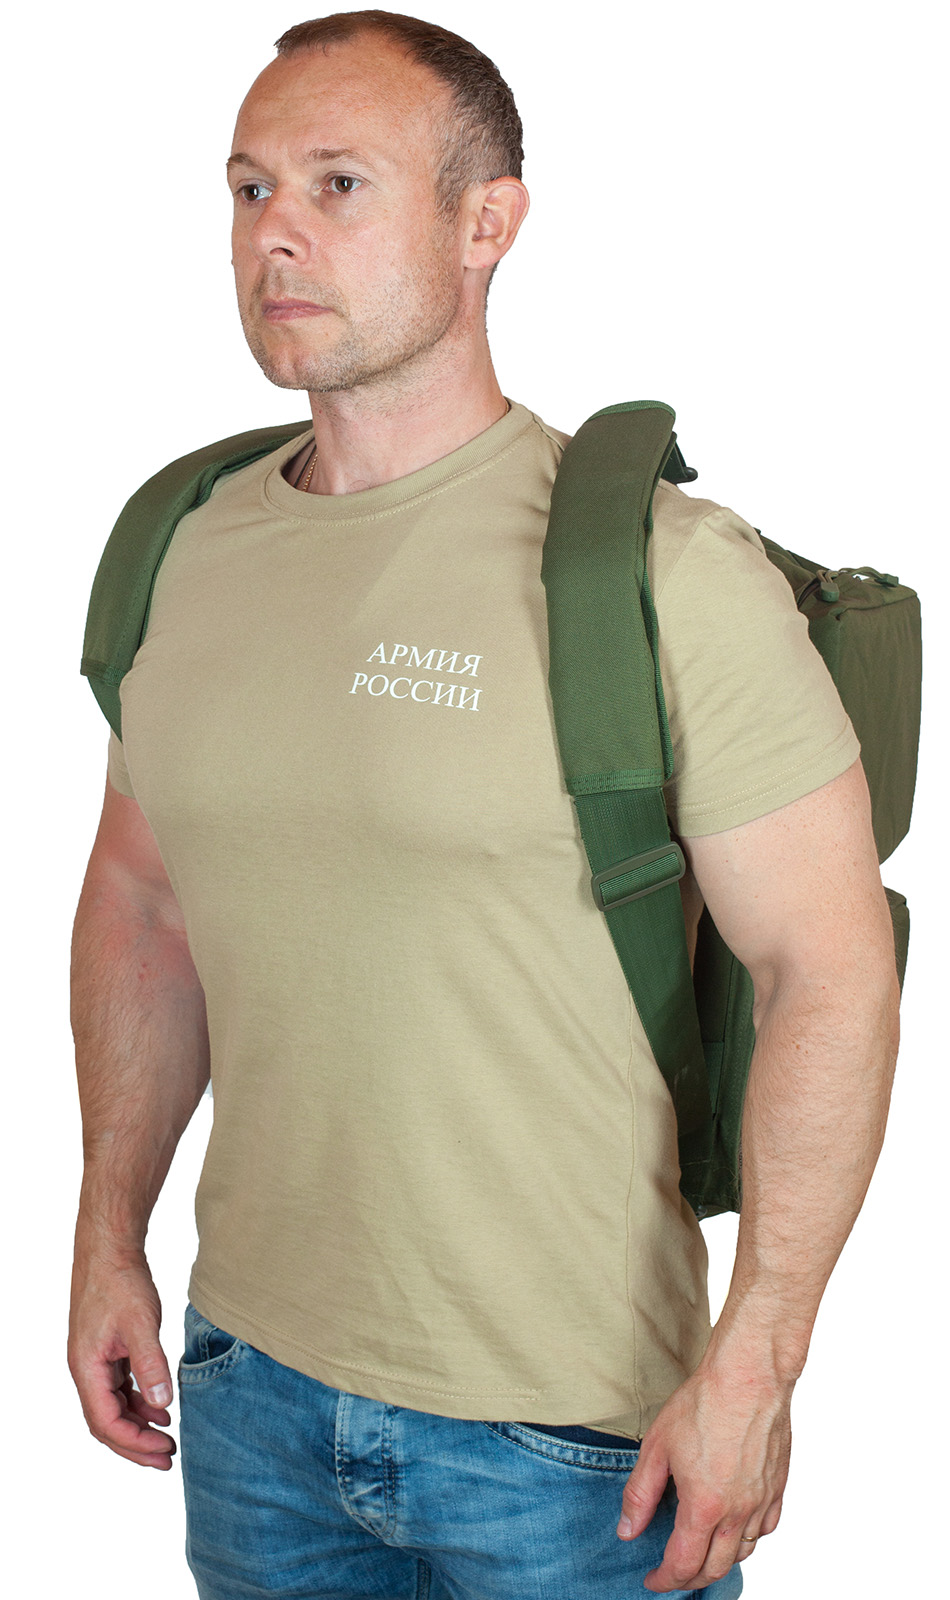 Купить походную сумку-рюкзак с нашивкой Полиция оптом выгодно онлайн